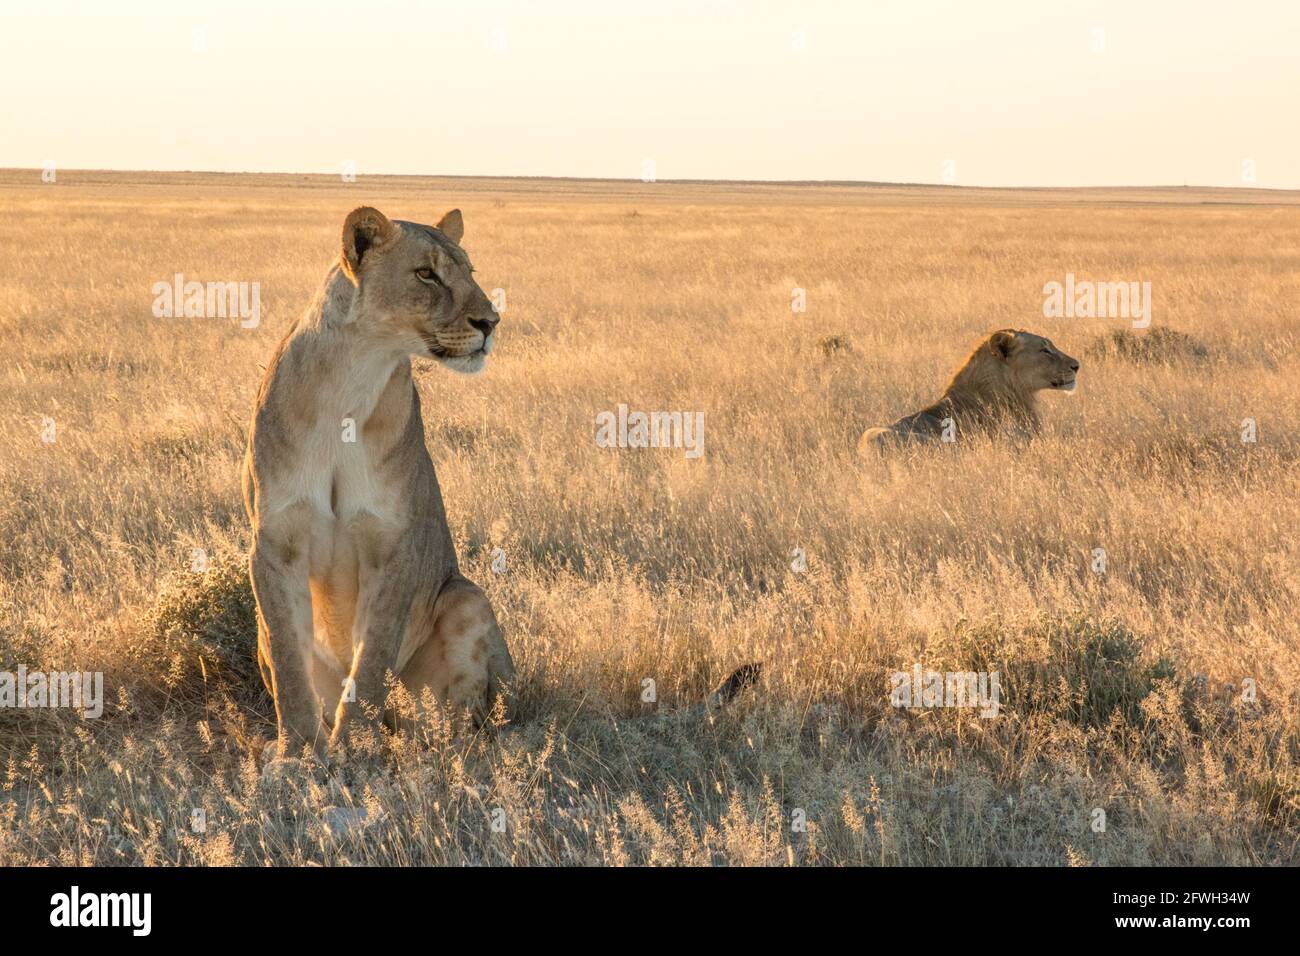 los leones del león okondeka se enorgullecen del parque nacional etosha Foto de stock